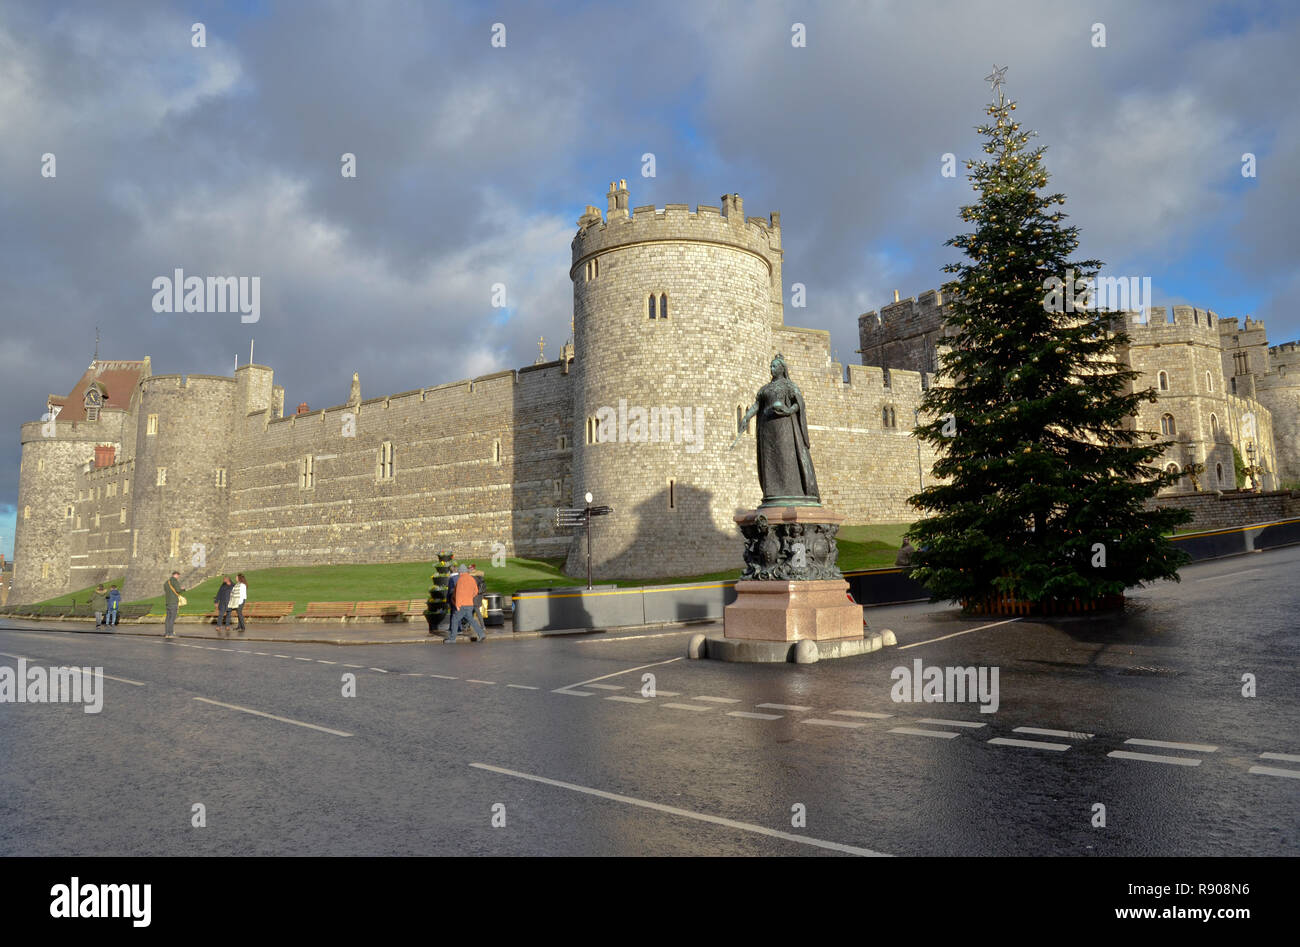 Windsor Castle, home of Queen Elizabeth II in Windsor, Berkshire, England Stock Photo